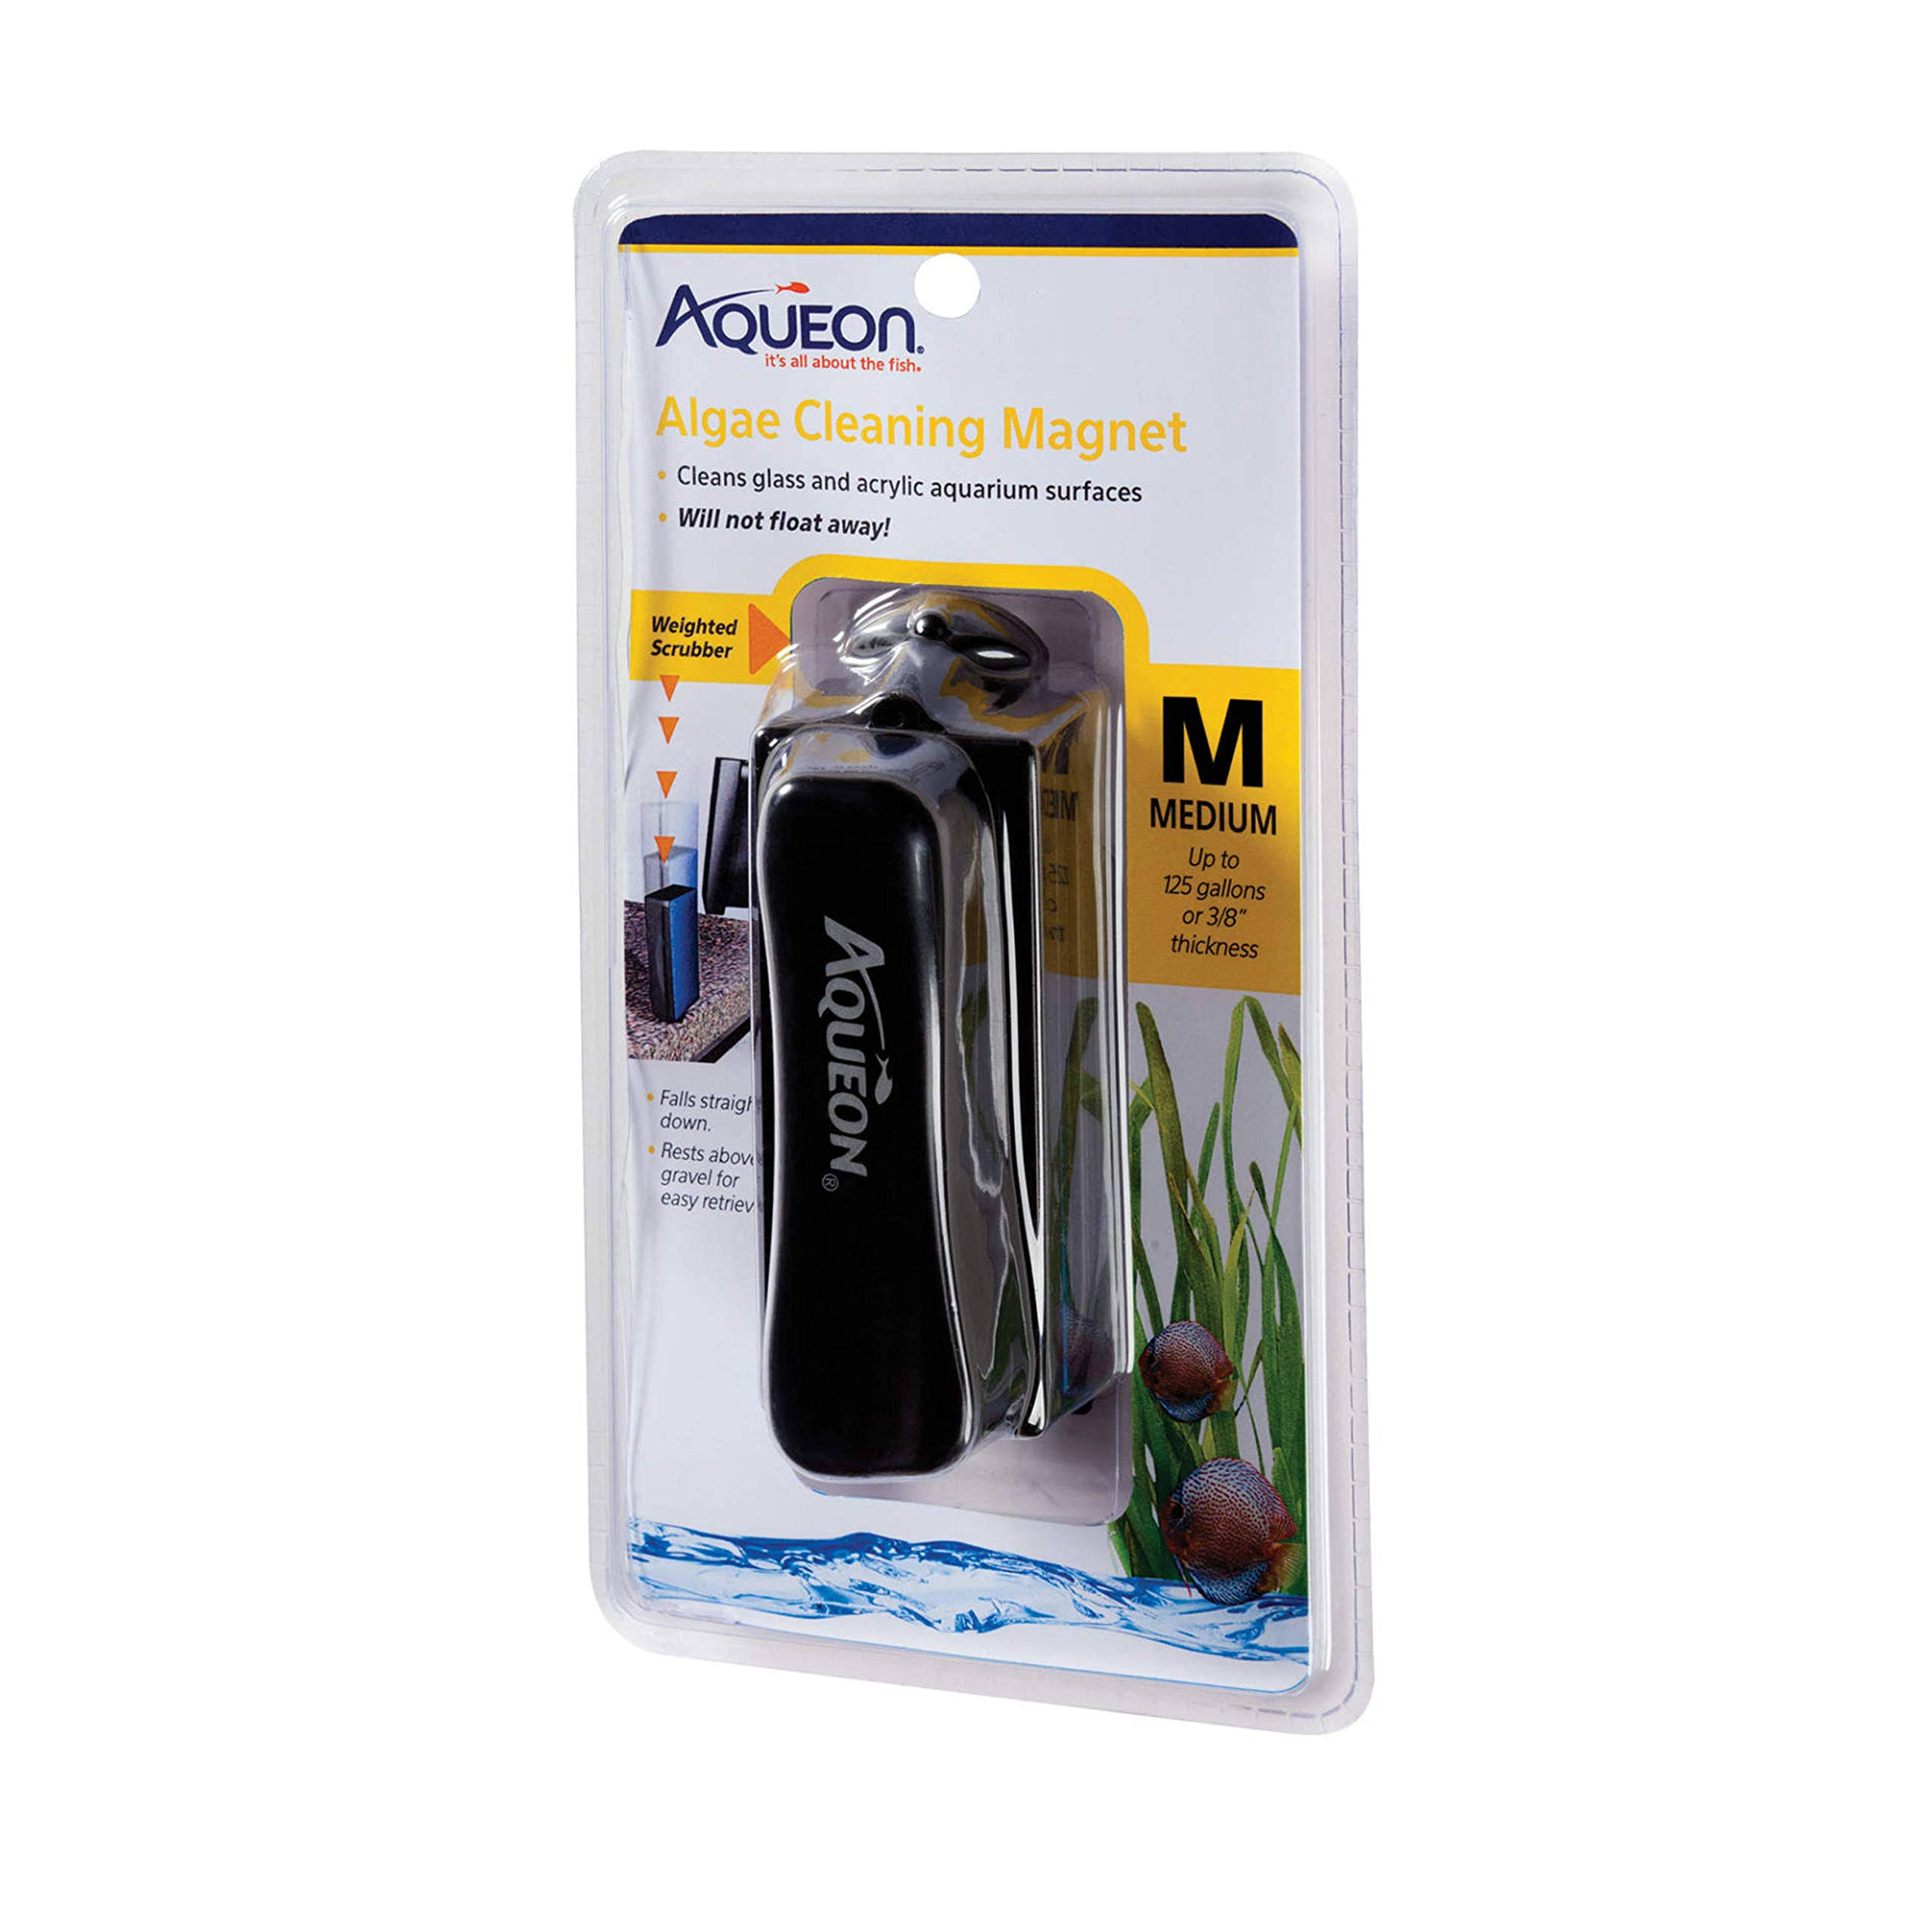 Aqueon Algae Cleaning Magnet - Medium, 8.75" x 5" x 3.25"